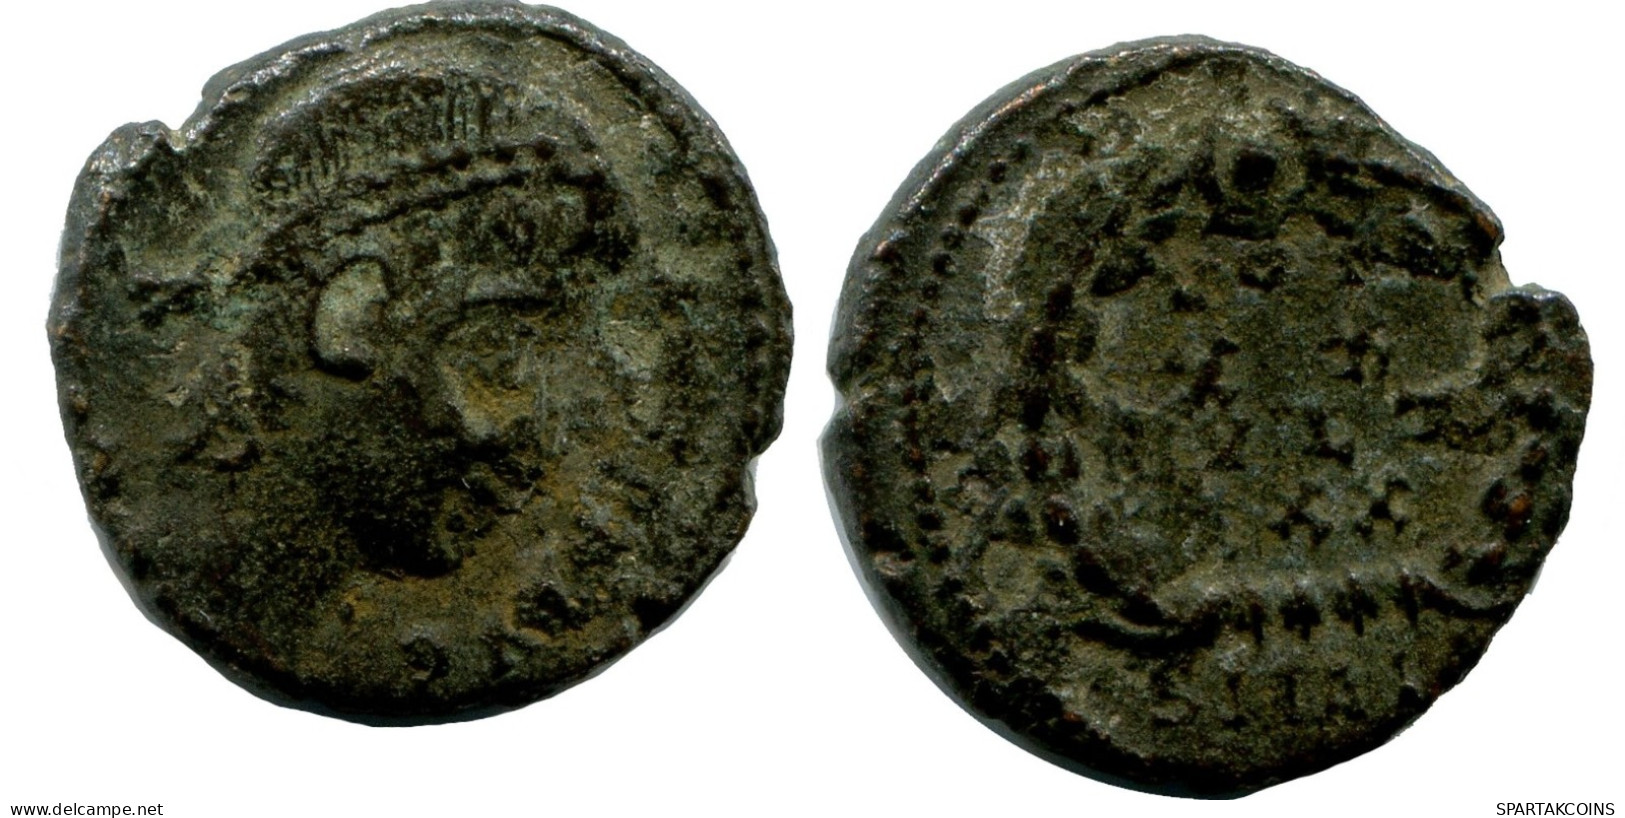 ROMAN Coin MINTED IN ALEKSANDRIA FOUND IN IHNASYAH HOARD EGYPT #ANC10189.14.U.A - L'Empire Chrétien (307 à 363)